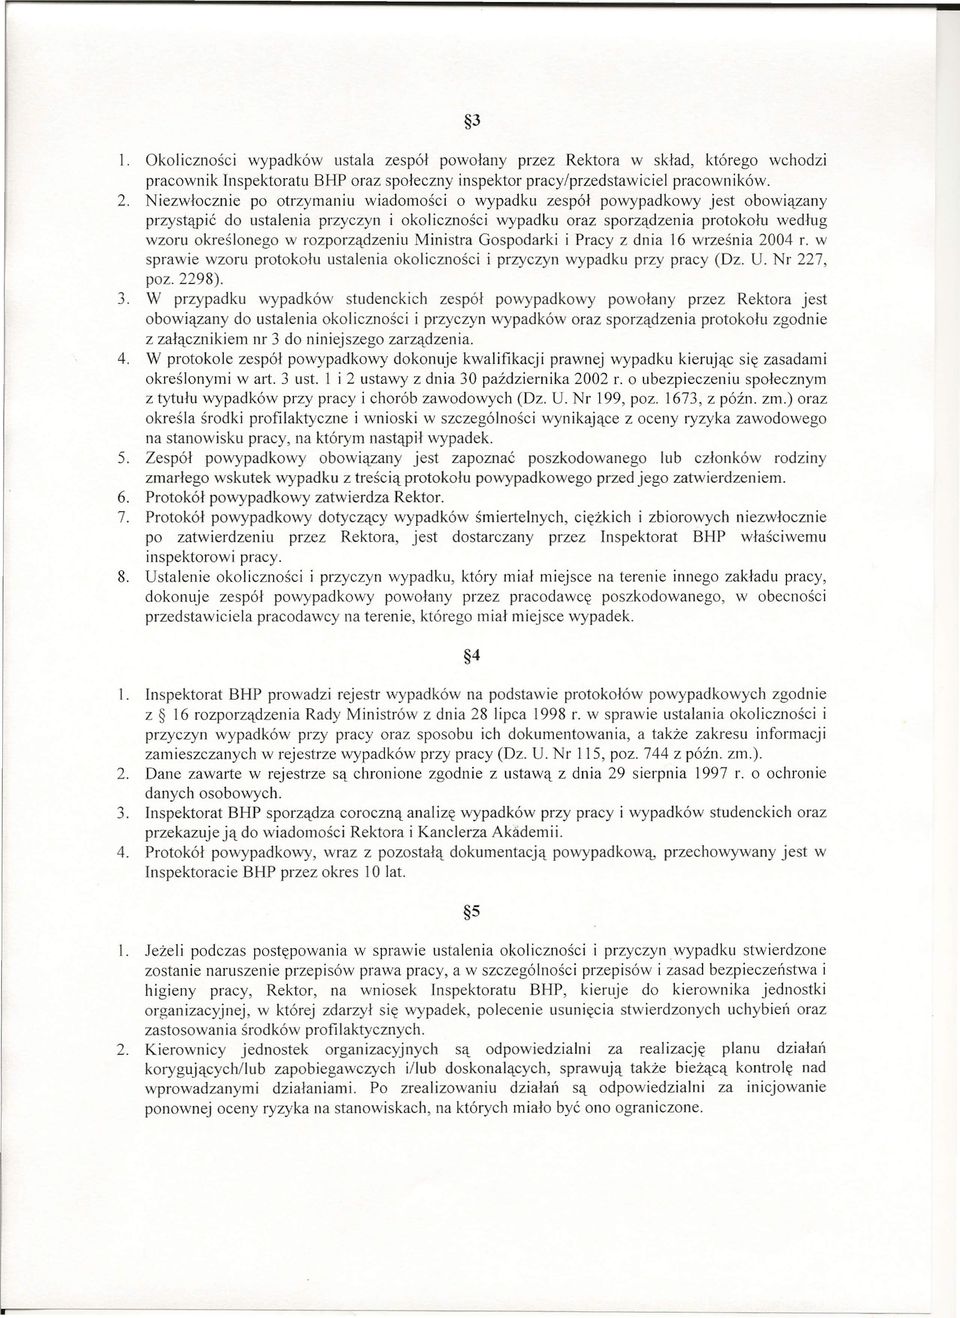 rozporządzeniu Ministra Gospodarki i Pracy z dnia 16 września 2004 r. w sprawie wzoru protokołu ustalenia okoliczności i przyczyn wypadku przy pracy (Dz. U. Nr 227, poz. 2298). 3.